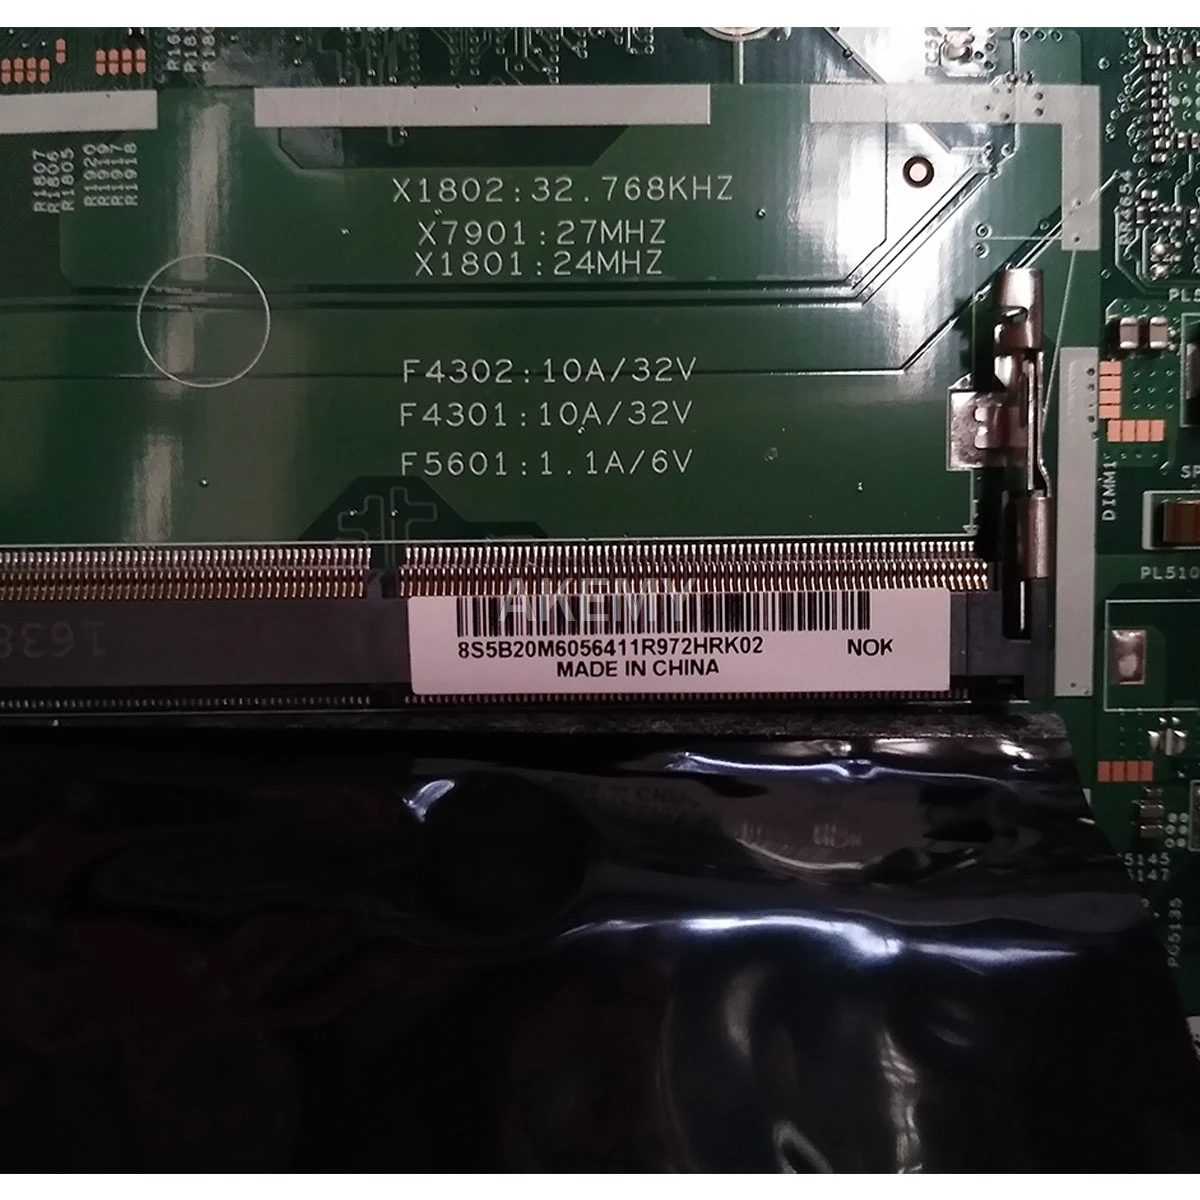 

15277-1 N motherboard For Lenovo V110-15ISK Laptop Motherboard I5-6200U R5 5B20M60564 LV115SK MB 15277-1N 448.08B01.001N